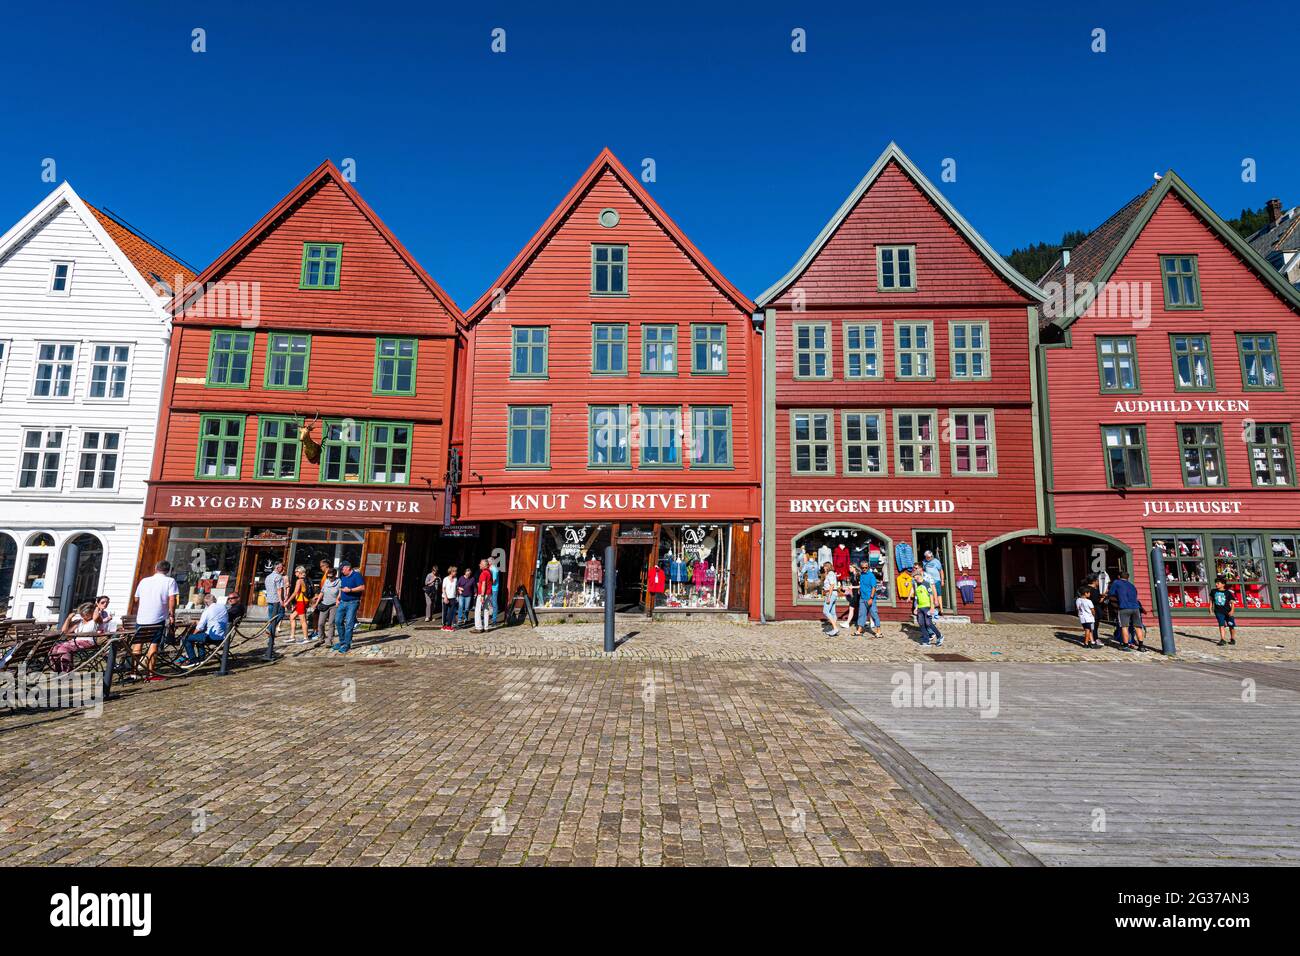 Bryggen, series of Hnaseatic buildings, Unesco world heritage site, Bergen, Norway Stock Photo